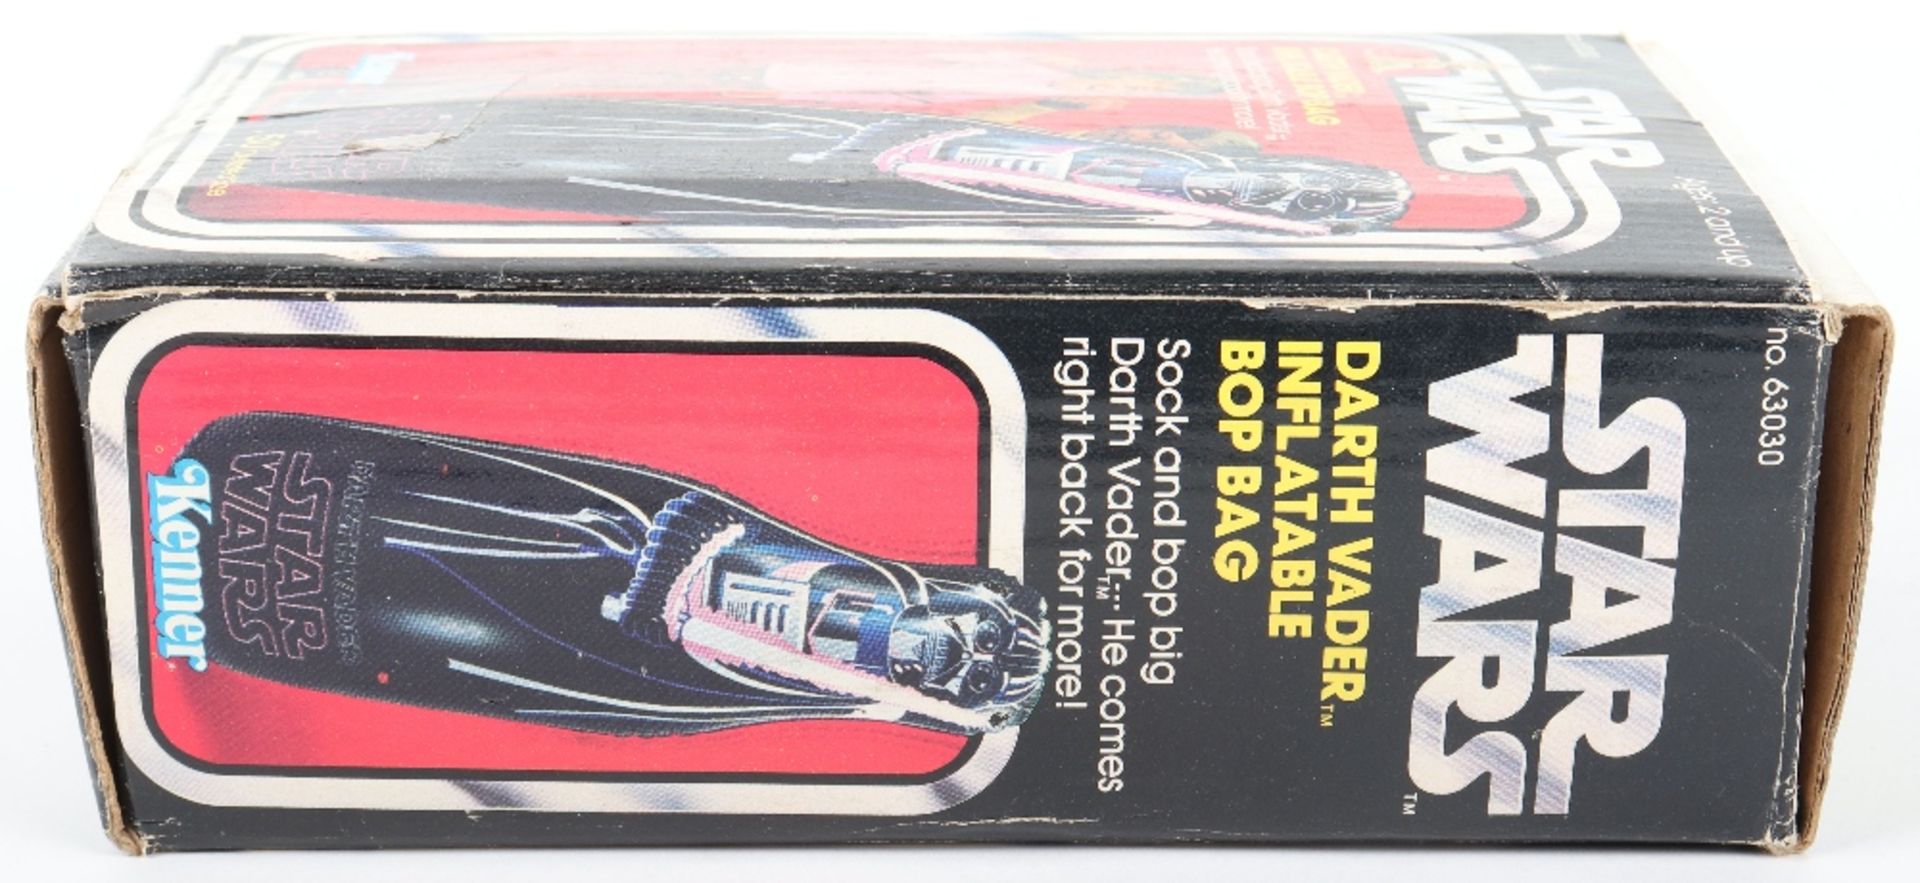 Boxed Kenner Star Wars Darth Vader Inflatable Bop Bag - Image 5 of 7